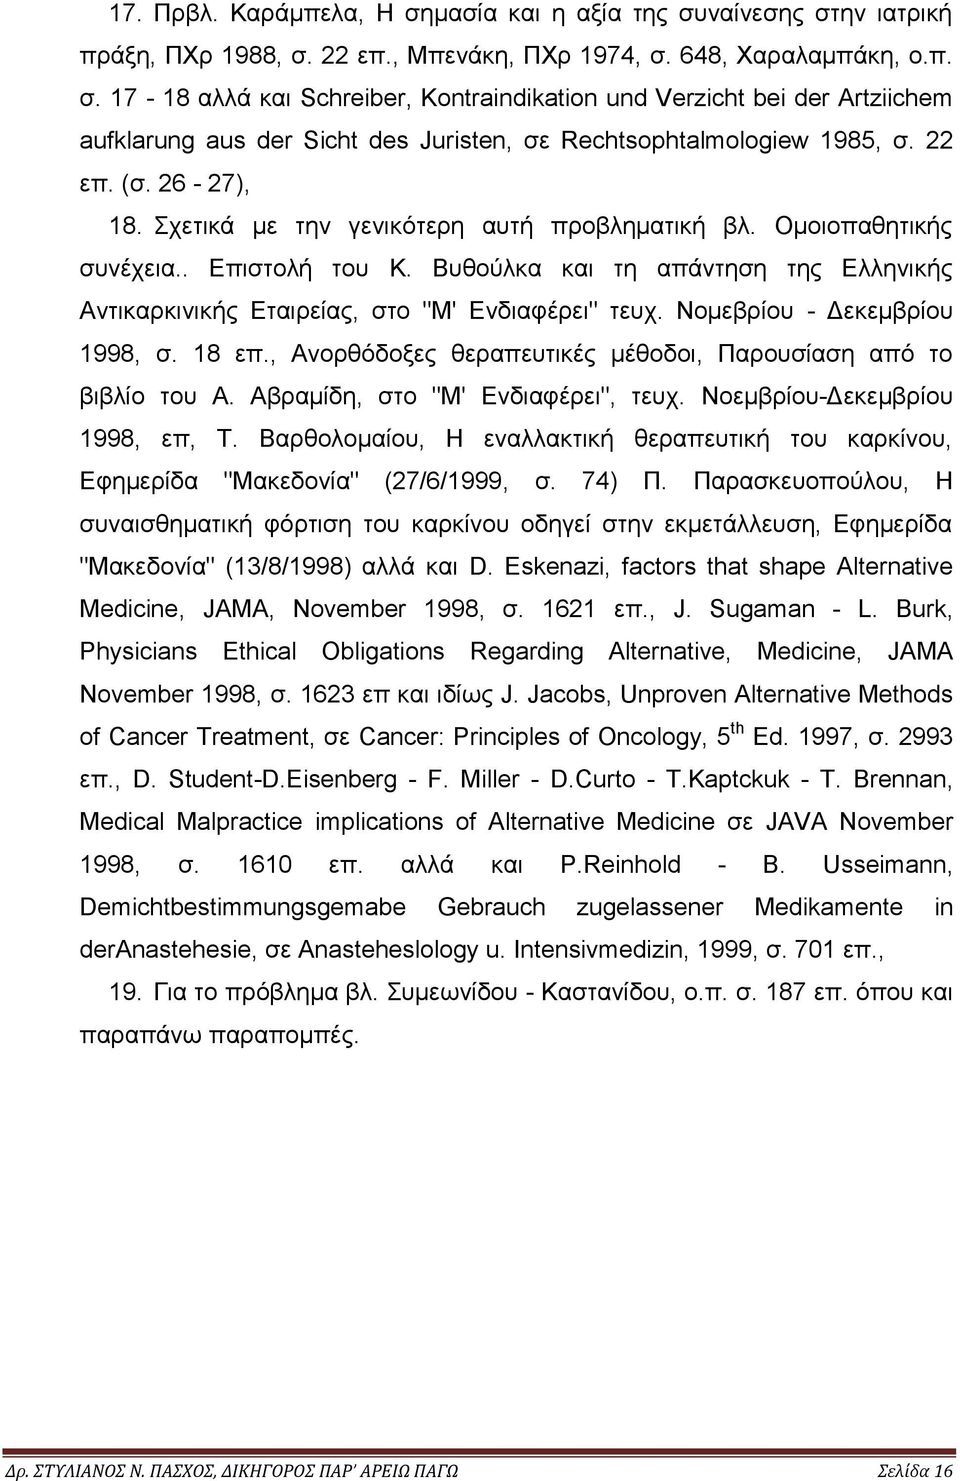 Βυθούλκα και τη απάντηση της Ελληνικής Αντικαρκινικής Εταιρείας, στο "Μ' Ενδιαφέρει" τευχ. Νομεβρίου - Δεκεμβρίου 1998, σ. 18 επ., Ανορθόδοξες θεραπευτικές μέθοδοι, Παρουσίαση από το βιβλίο του Α.